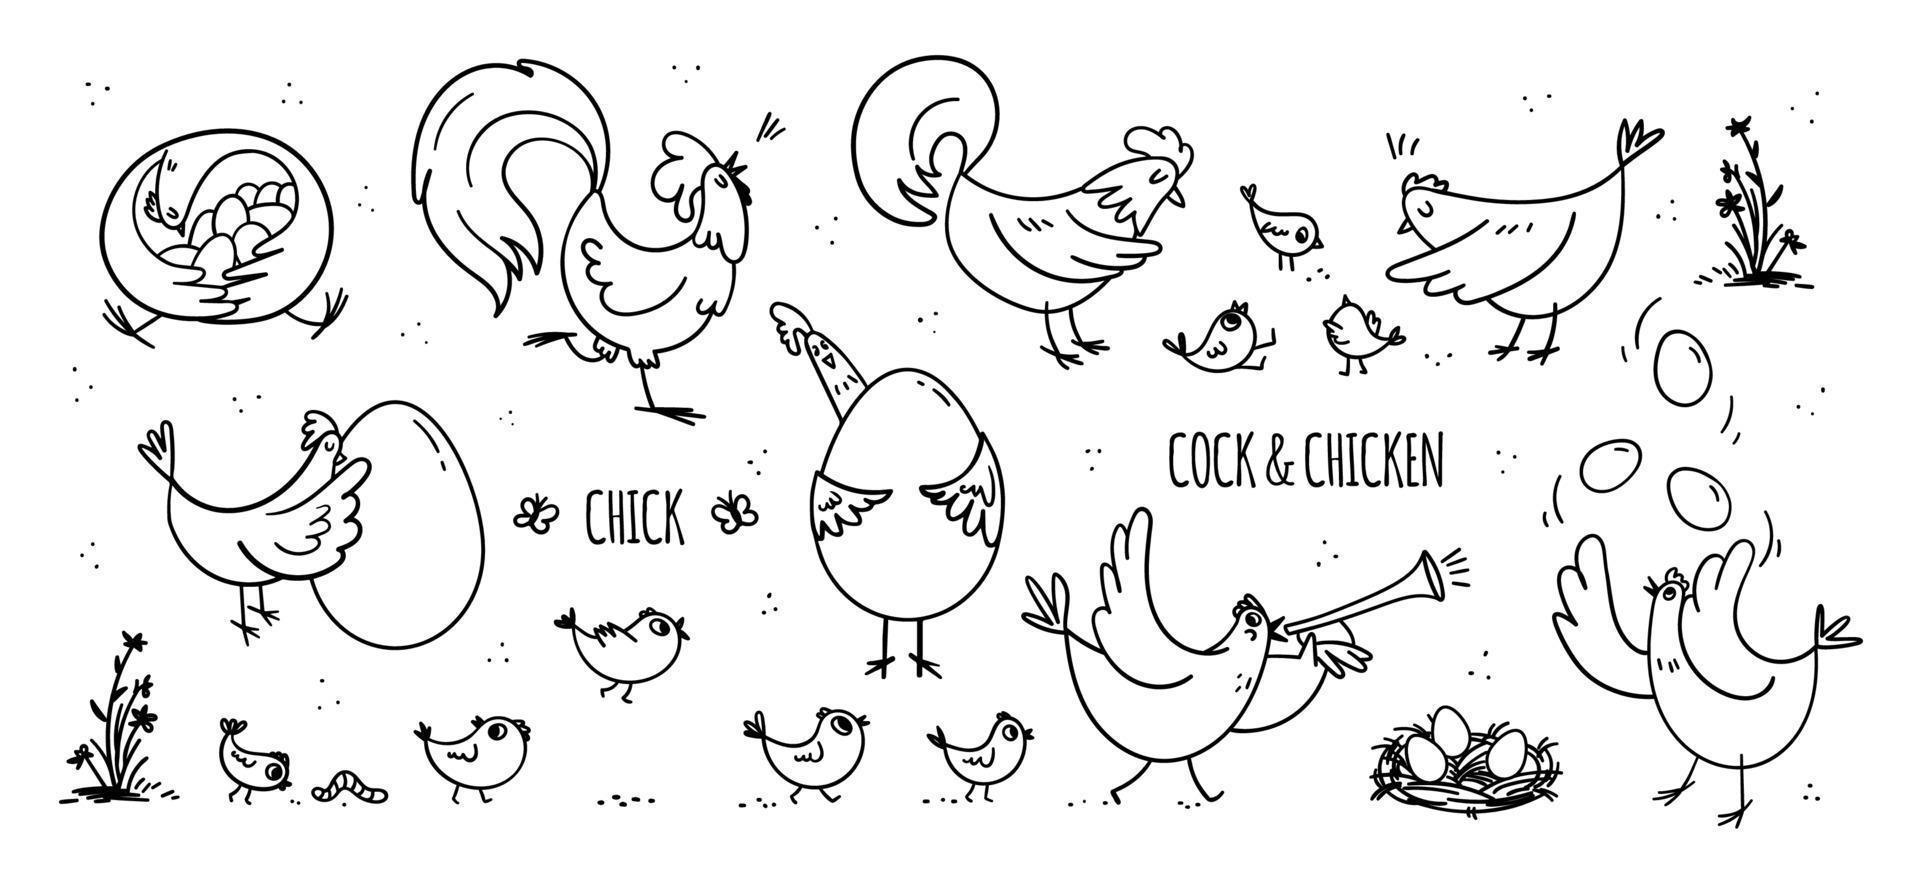 en uppsättning handritade höns och tuppar med sina små kycklingar. en samling roliga tamfåglar som lever sitt eget liv på gården. vektor stock illustrationer i doodle stil isolerad på vitt.